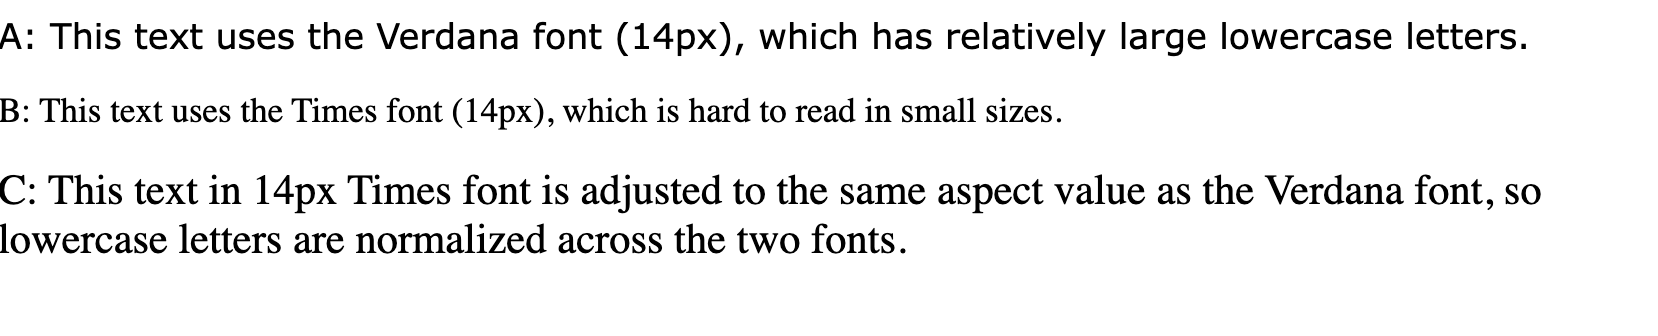 שורות טקסט עם הכיתוב &#39;הטקסט הזה משתמש בגופן verdana (14 פיקסלים), שמכיל אותיות קטנות גדולות יחסית&#39;, &#39;הטקסט הזה משתמש בגופן Times (14px), שקשה לקרוא אותו בגדלים קטנים&#39; וגם &#39;הטקסט הזה בגופן 14px Times מותאם לאותו ערך גובה-רוחב כמו הגופן Verdana, כך שהגופנים באותיות קטנות מנורמלים בין שני הגופנים